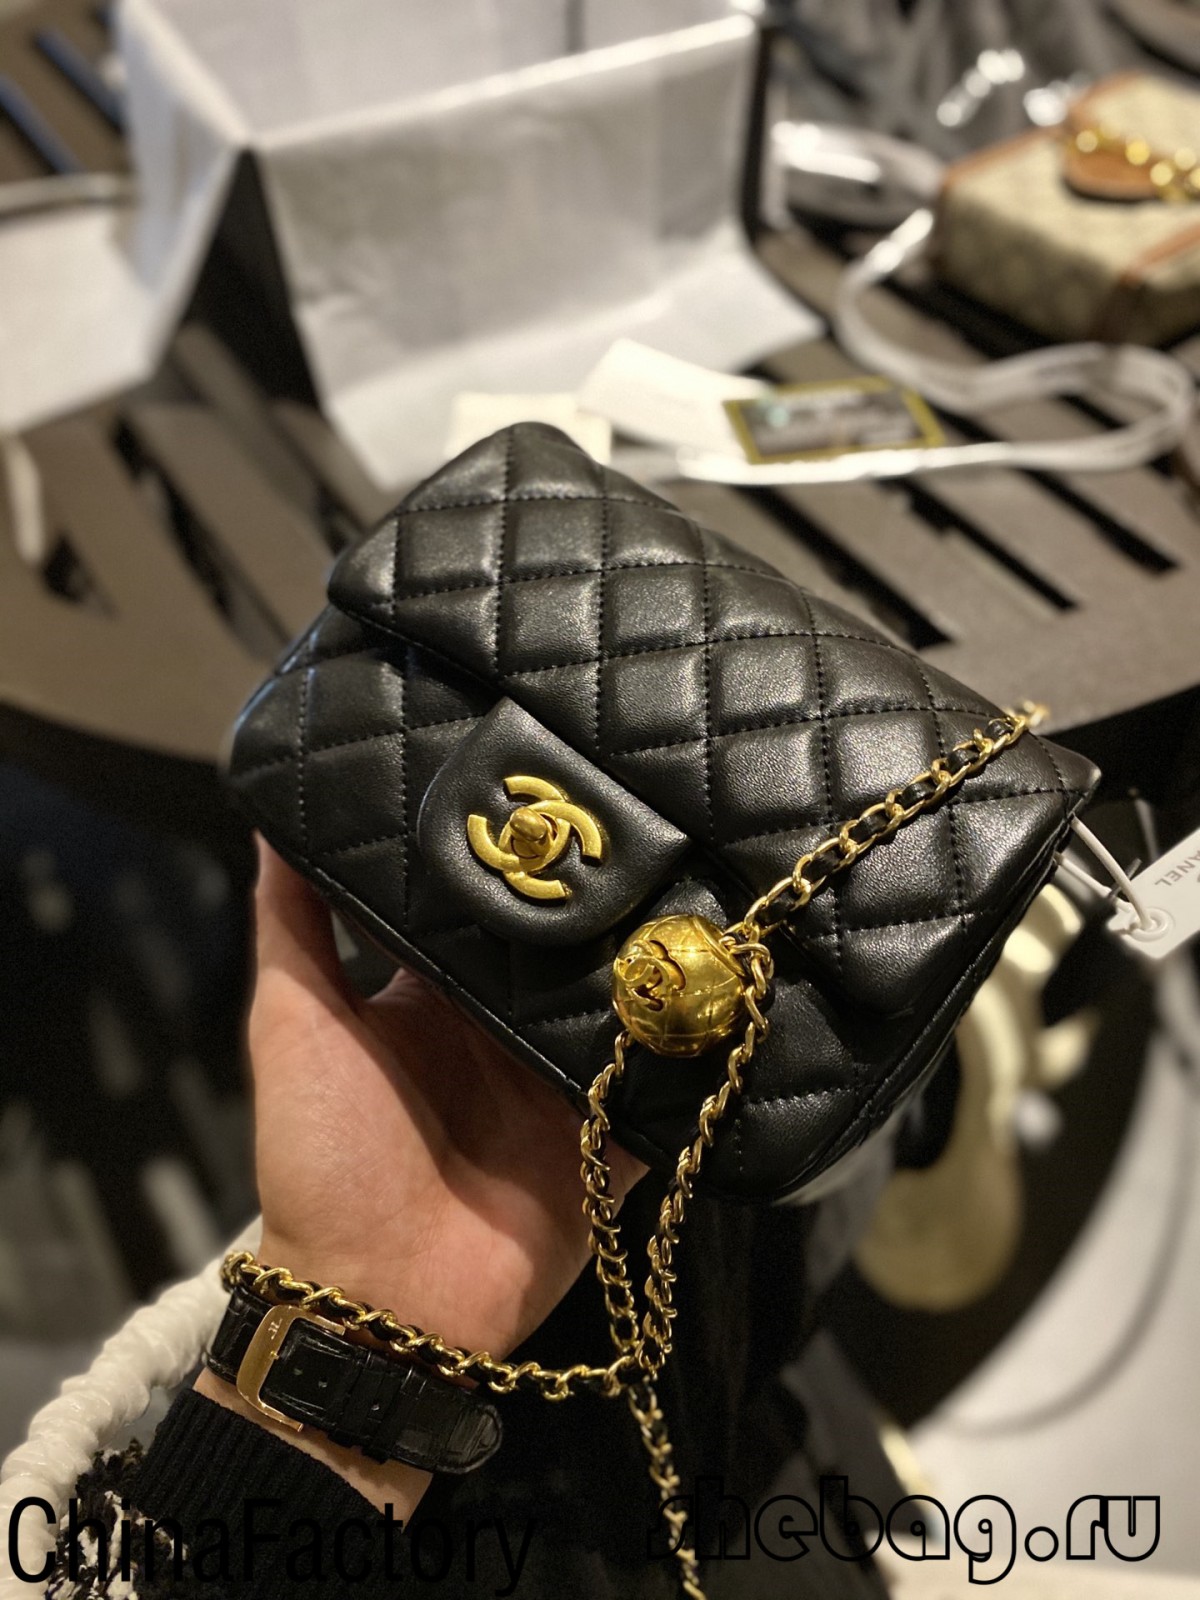 1:1 ការចម្លងកាបូបម៉ាក Chanel: លឺផ្លឹបឭបុរាណជាមួយនឹងខ្សែសង្វាក់ដែលអាចលៃតម្រូវបាន (2022 ក្តៅបំផុត) - ហាងអនឡាញកាបូប Louis Vuitton ក្លែងក្លាយដែលមានគុណភាពល្អបំផុត កាបូបអ្នករចនាចម្លង ru